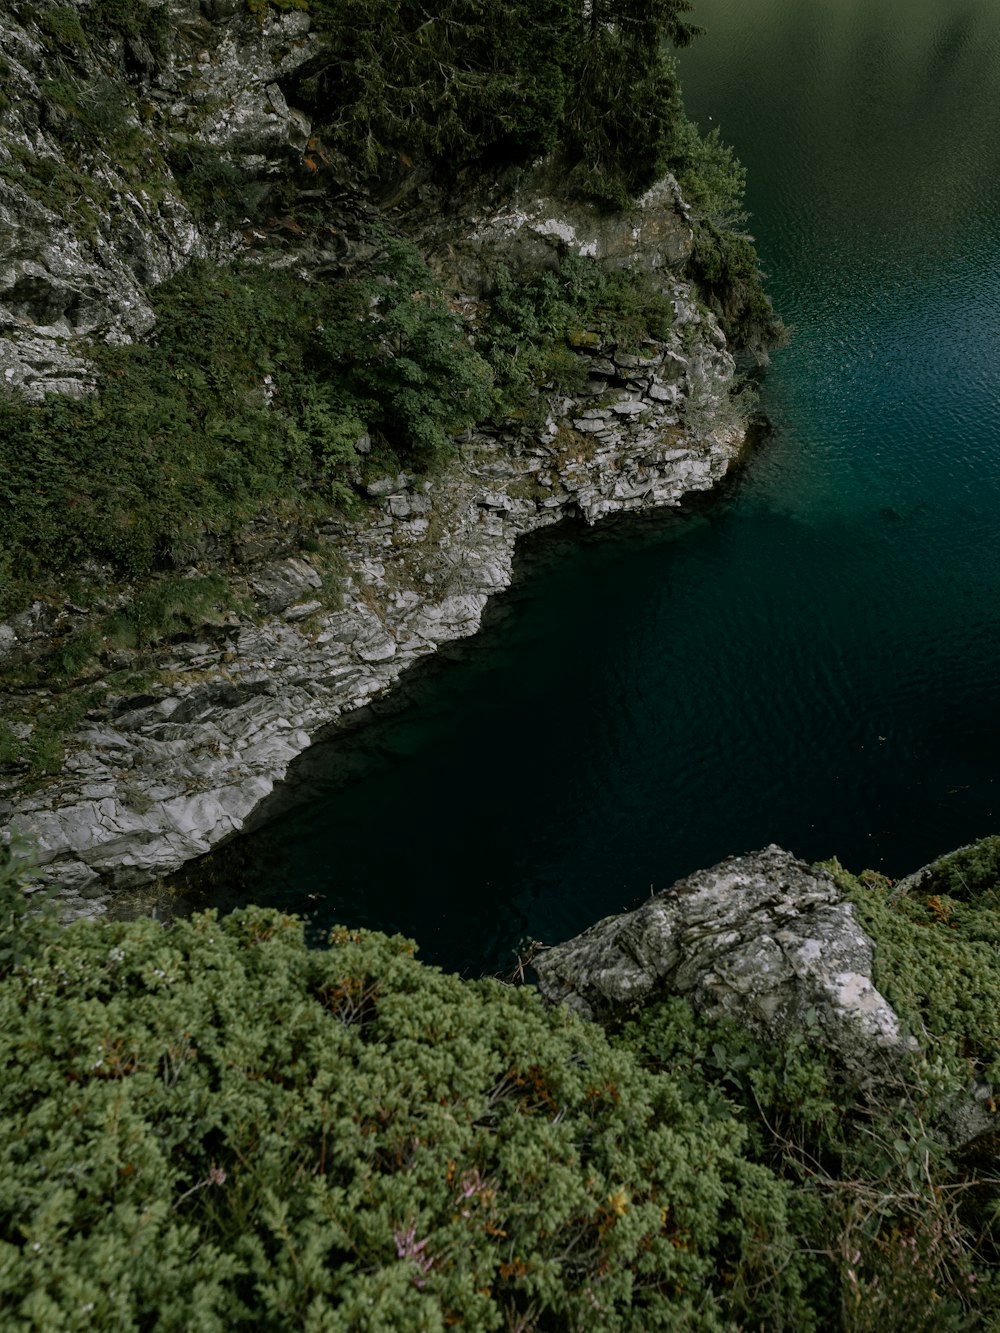 Montaña rocosa verde y gris junto a cuerpo de agua azul durante el día